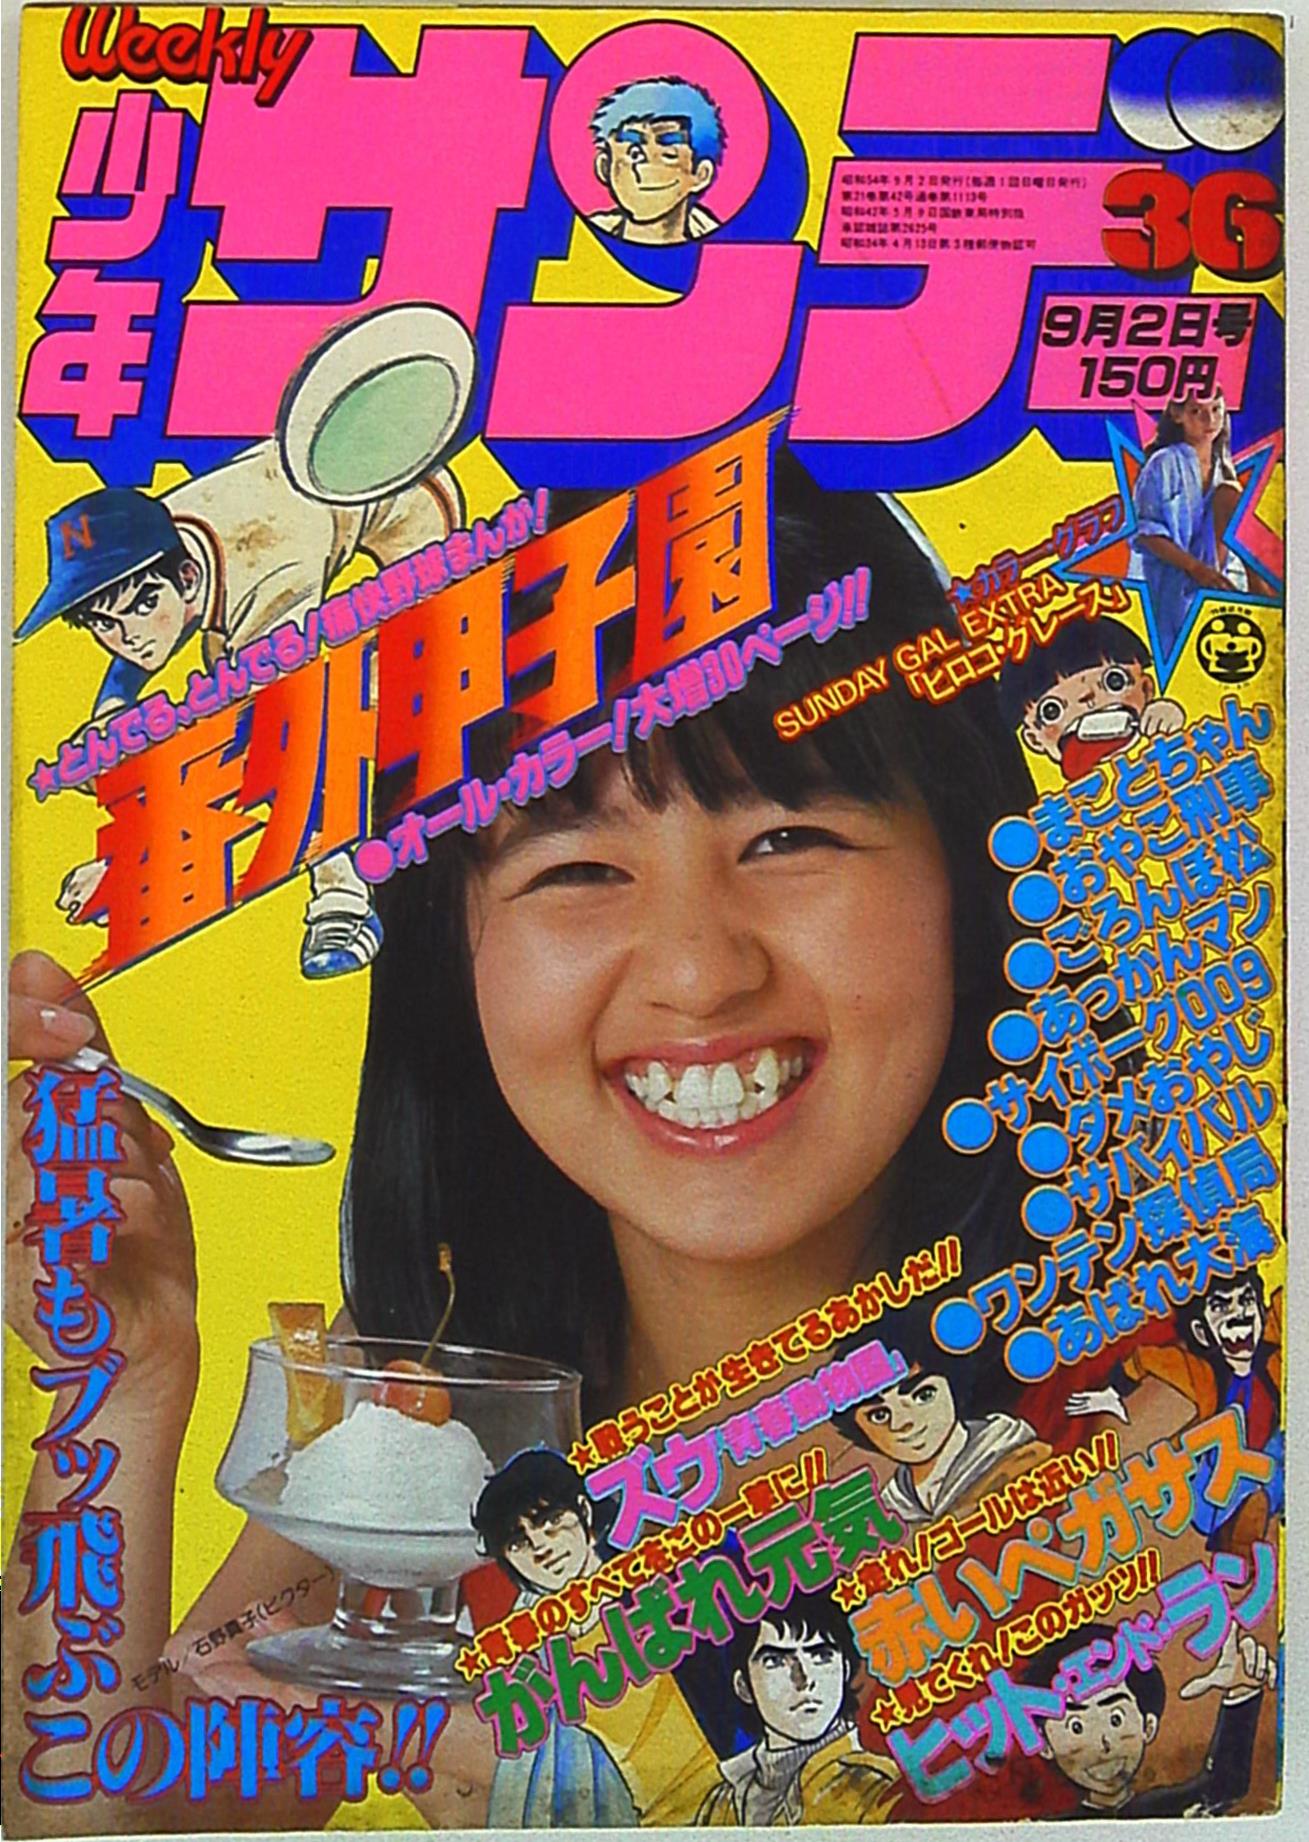 shogakukan weekly manga magazine in 1979 (showa 5